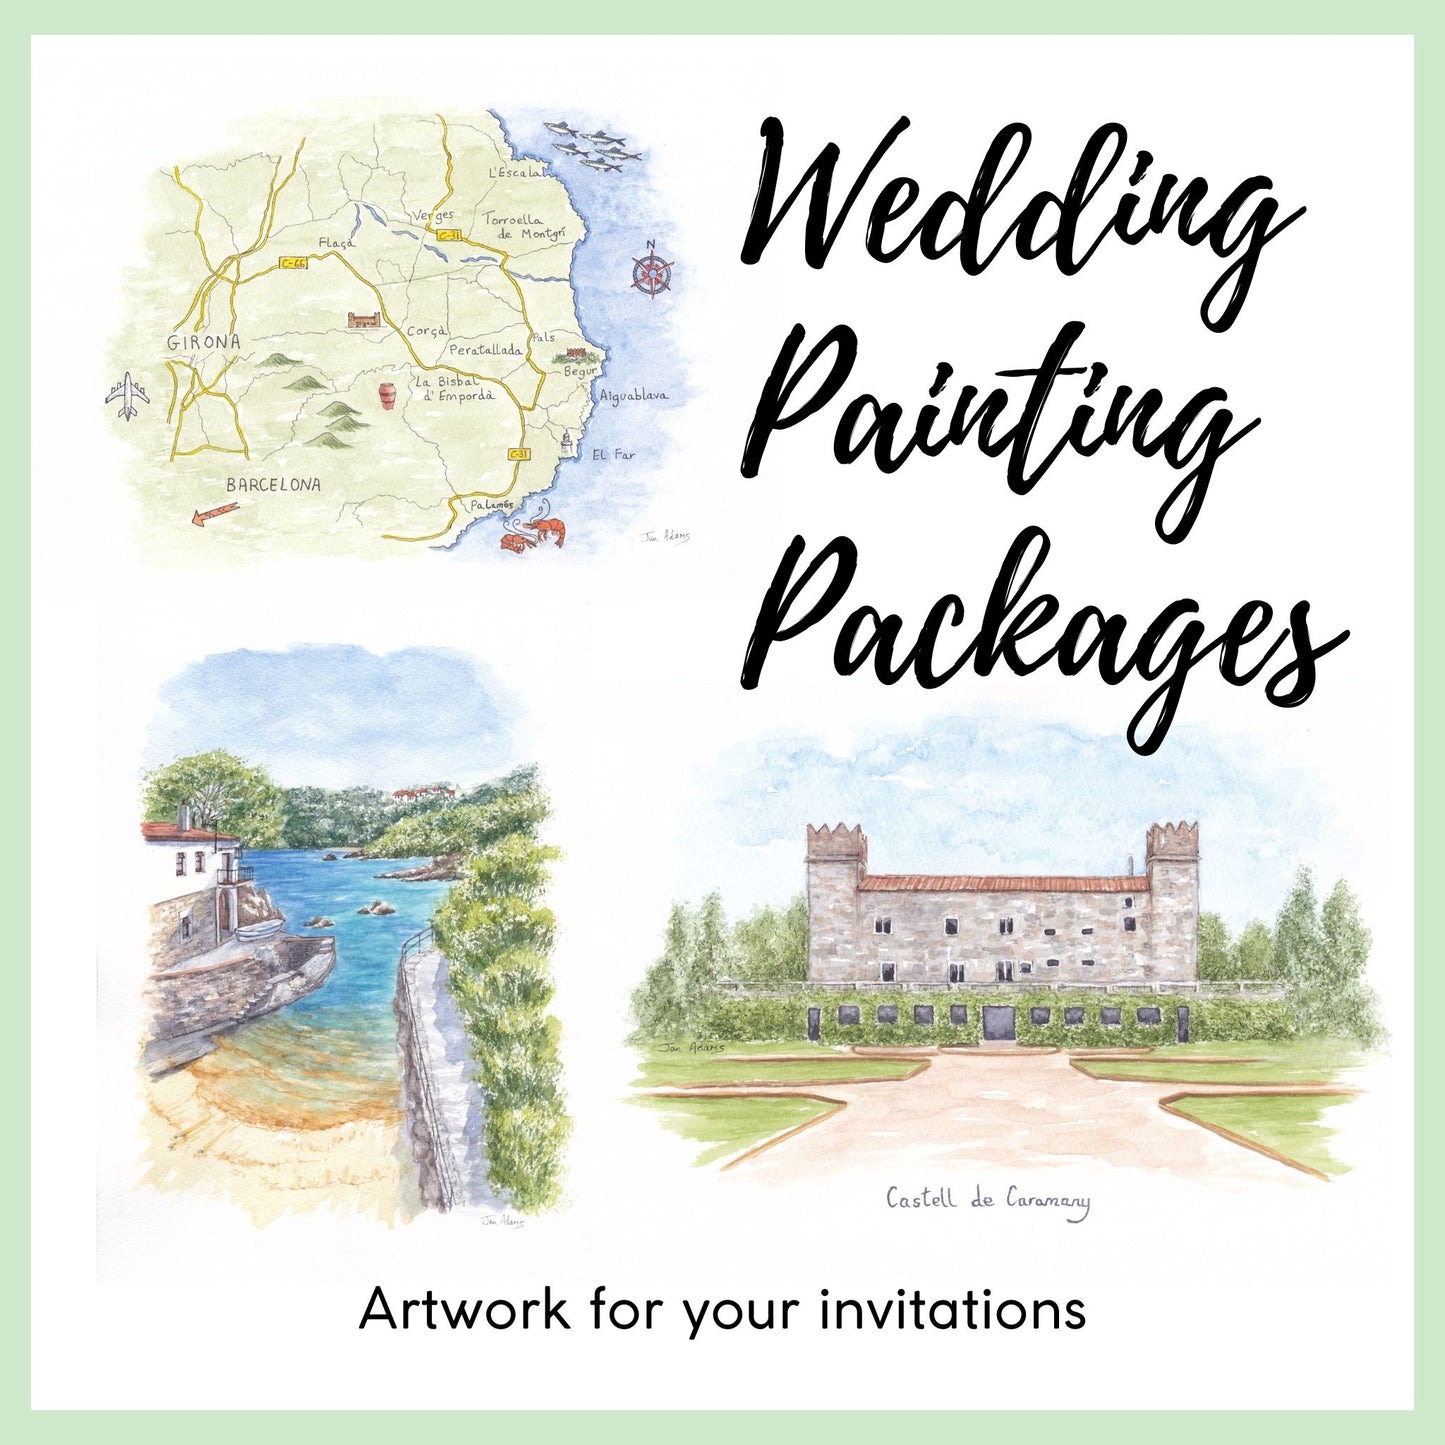 Wedding Venue Portraits in Watercolour